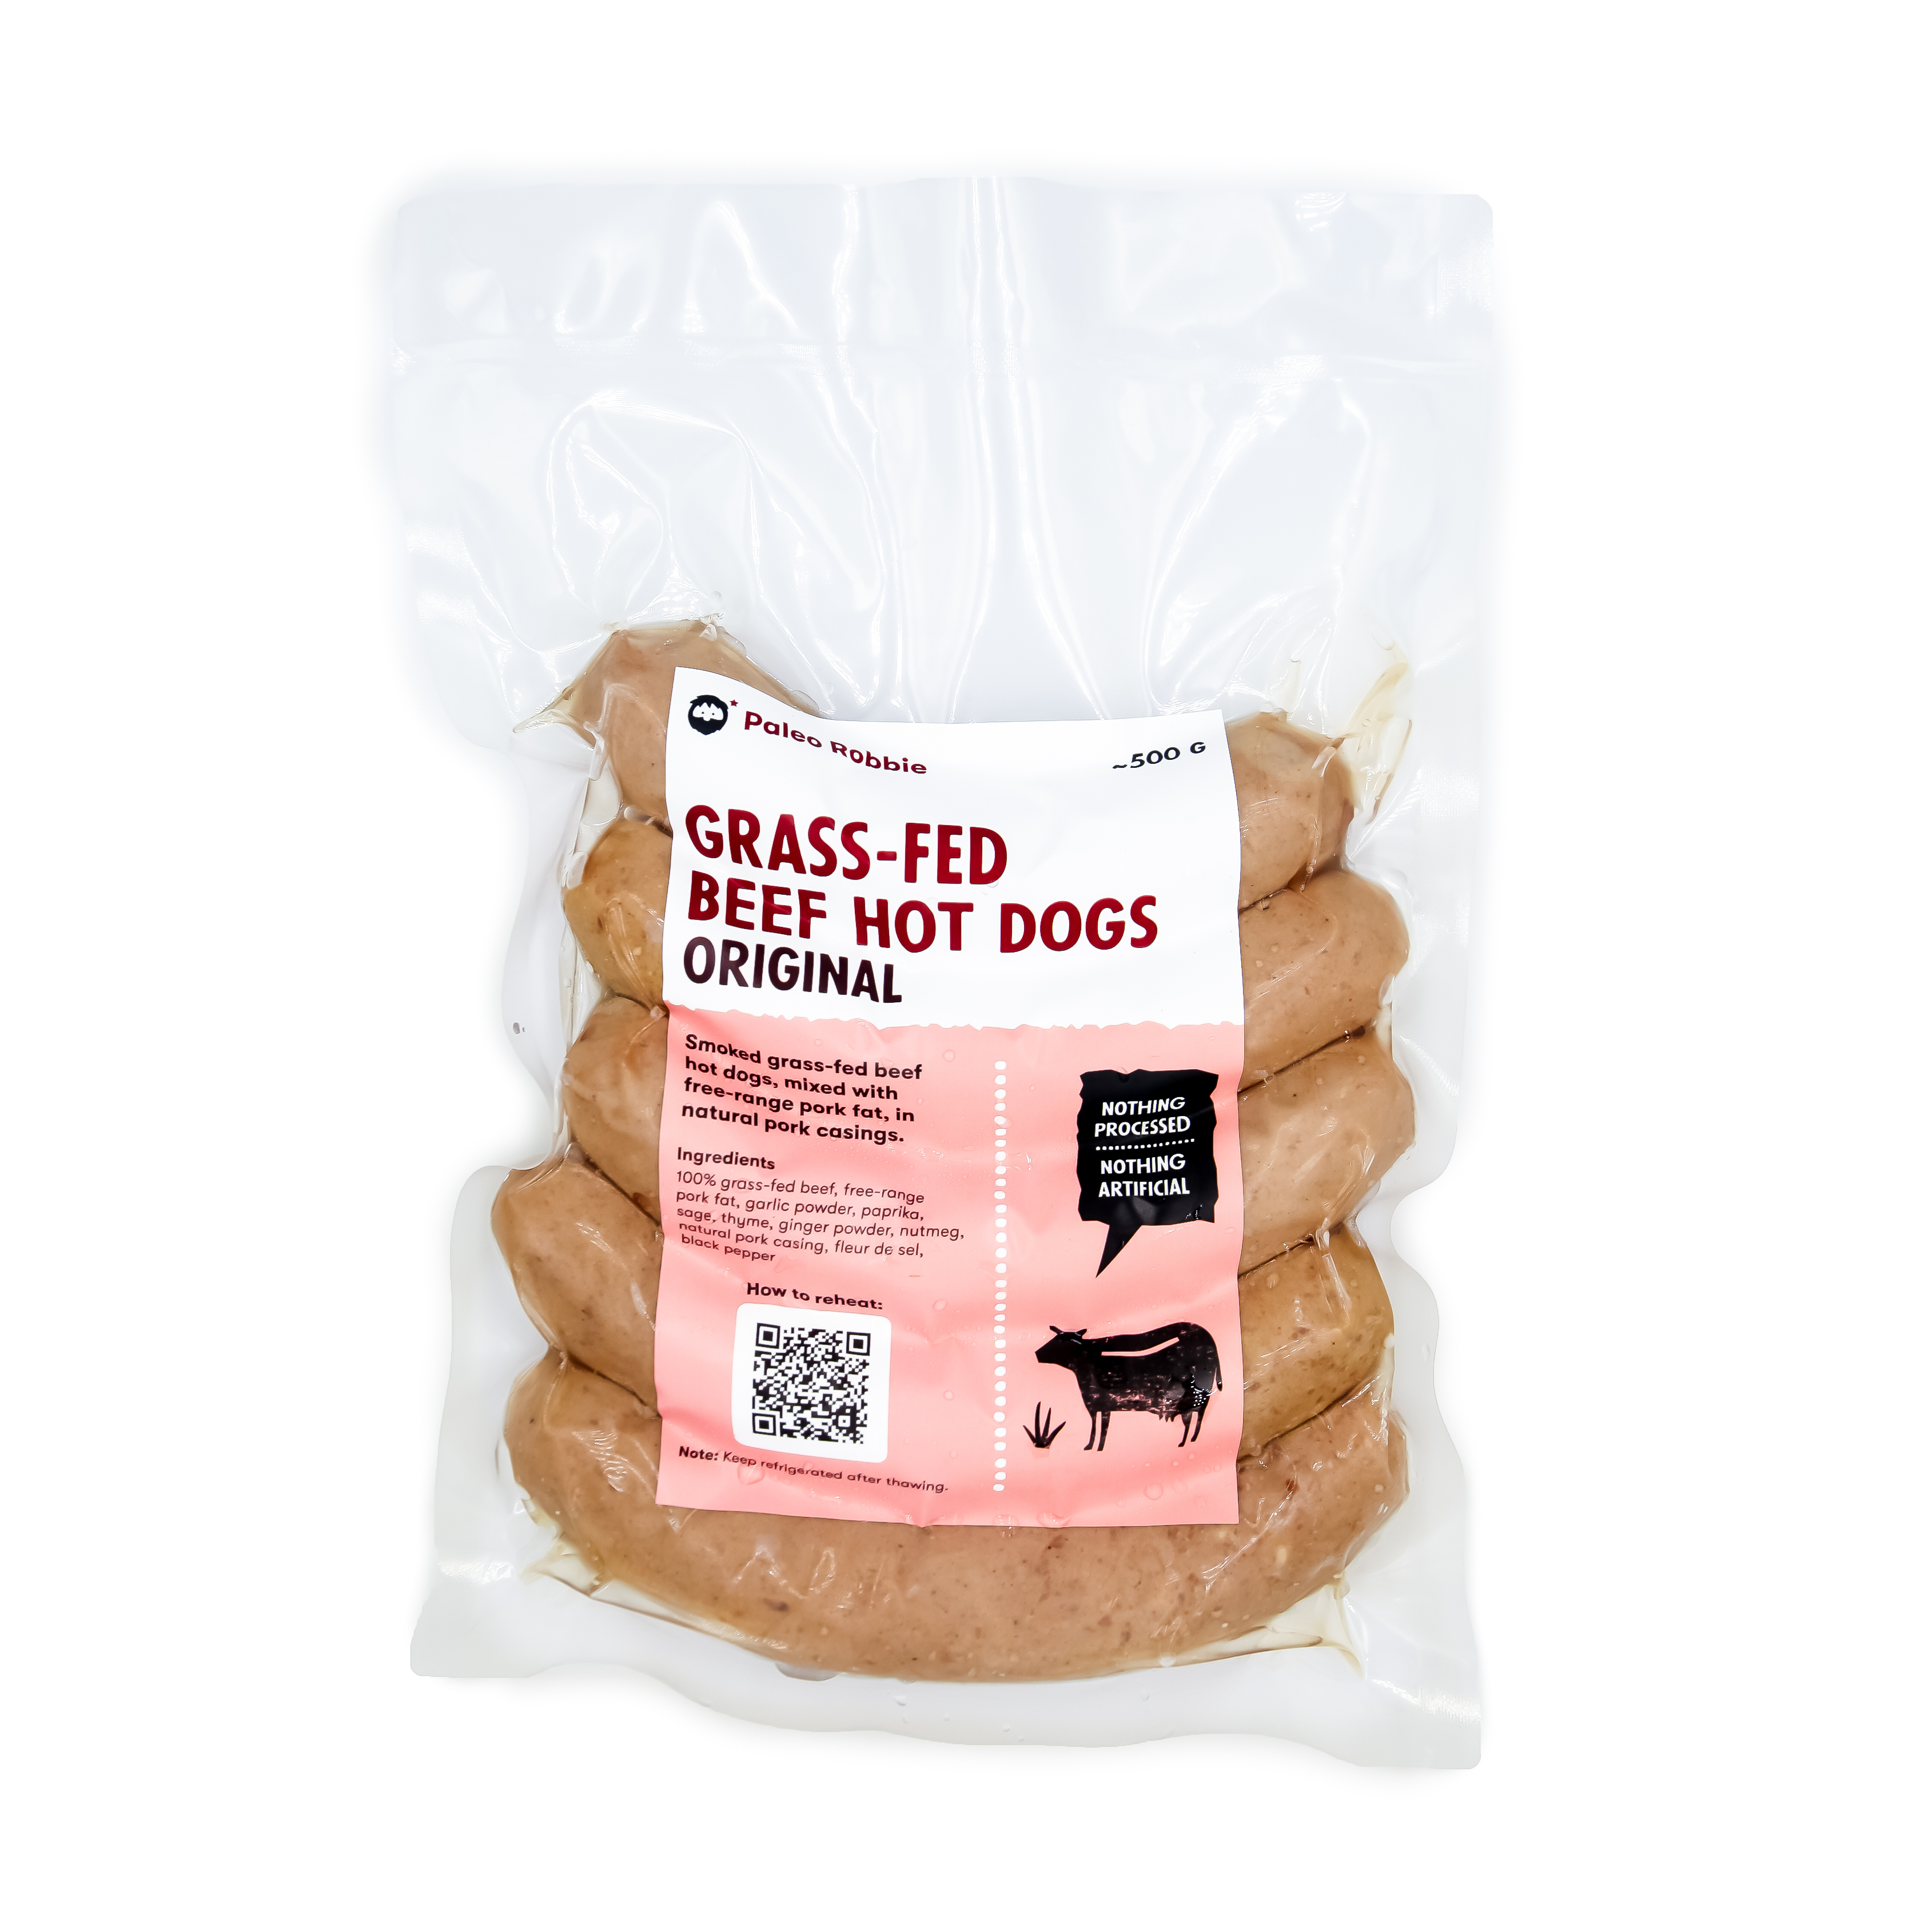 Grass-fed Beef Hot Dogs : Original